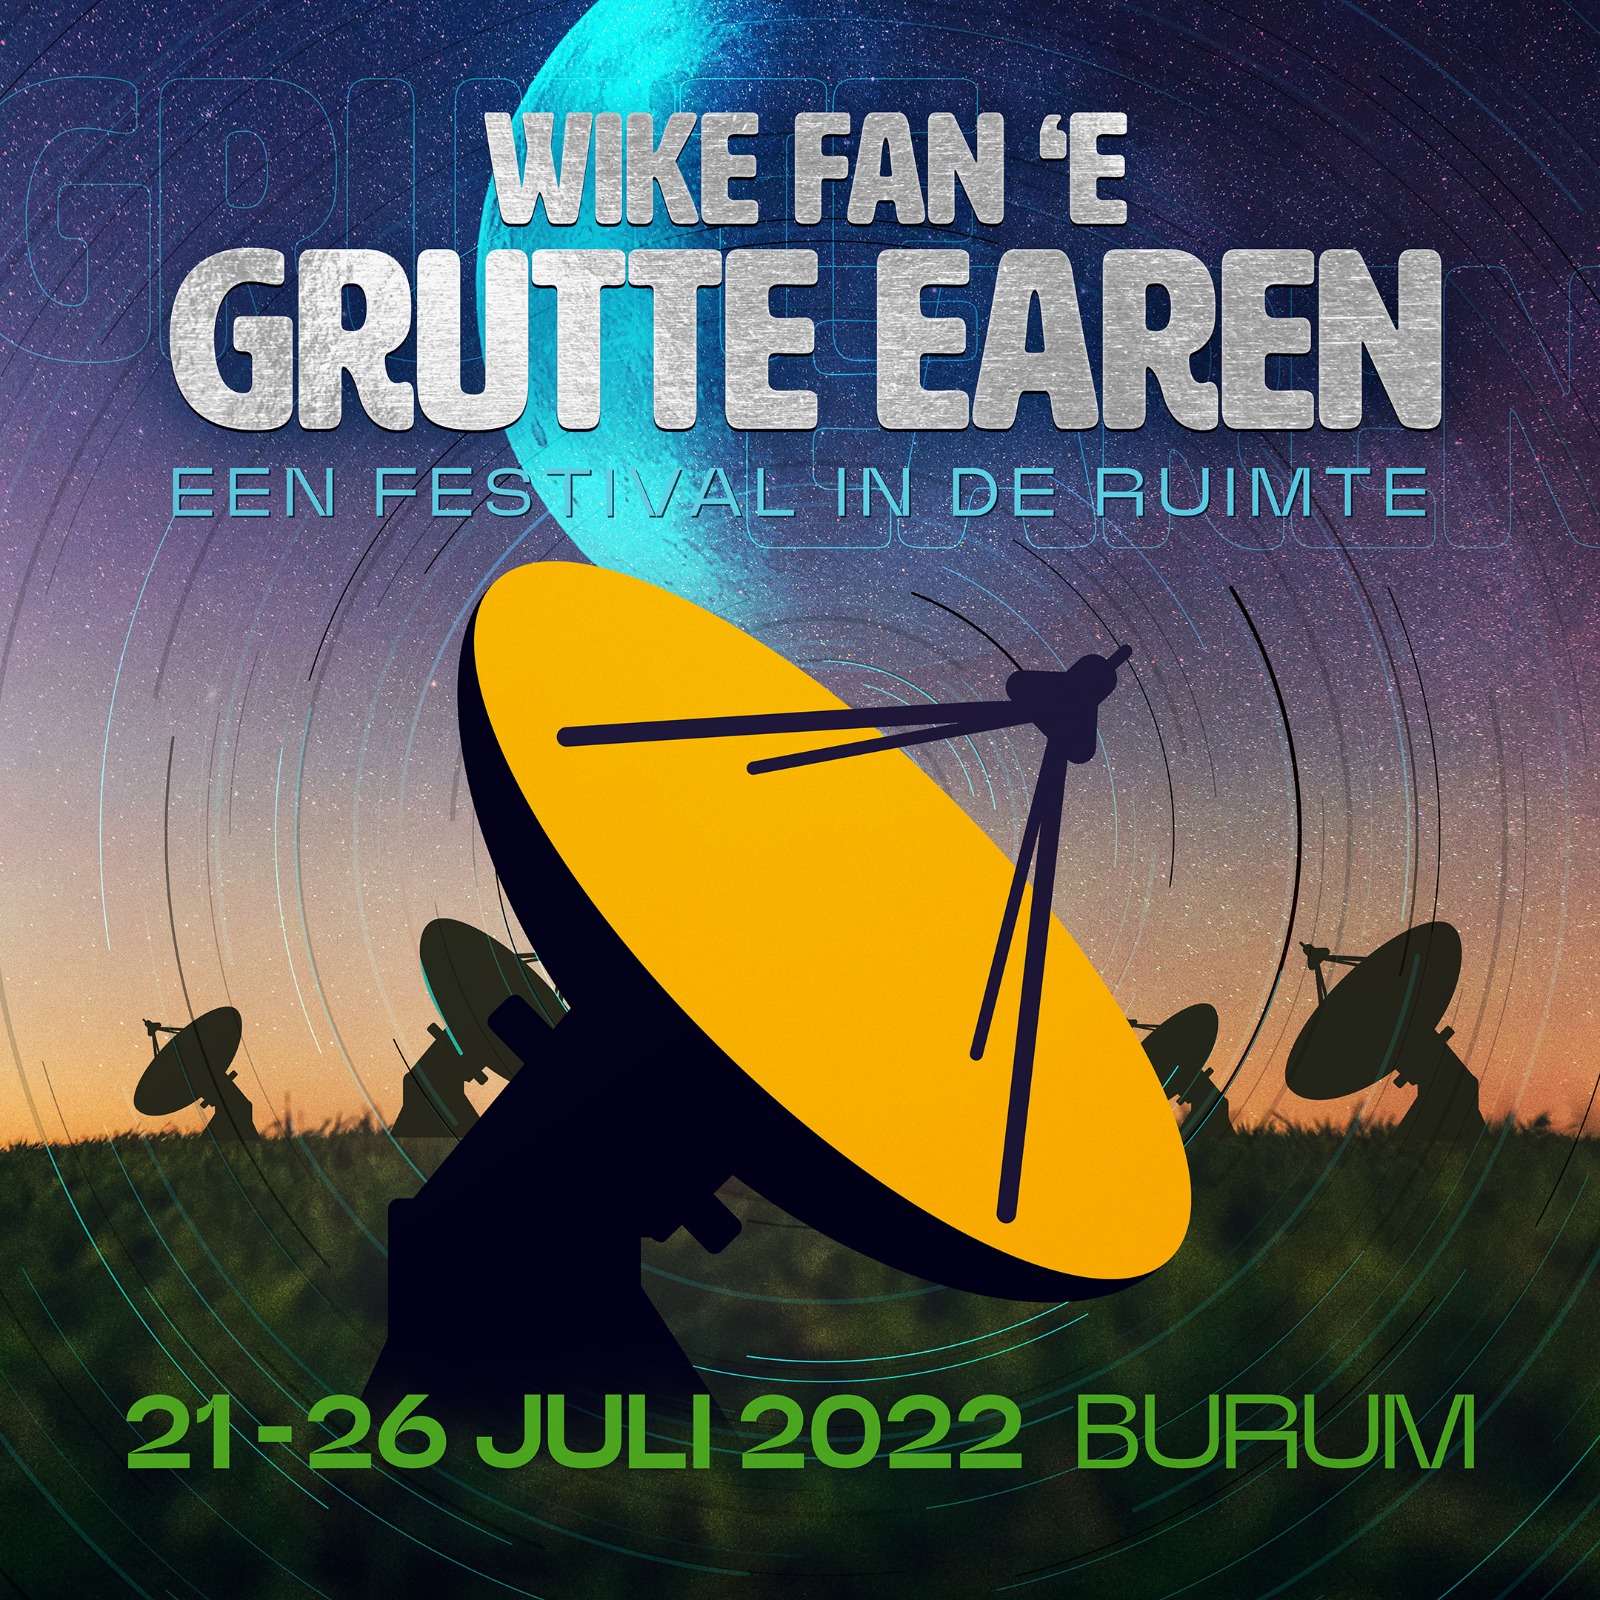 Coming up: De Wike fan ‘e Grutte Earen